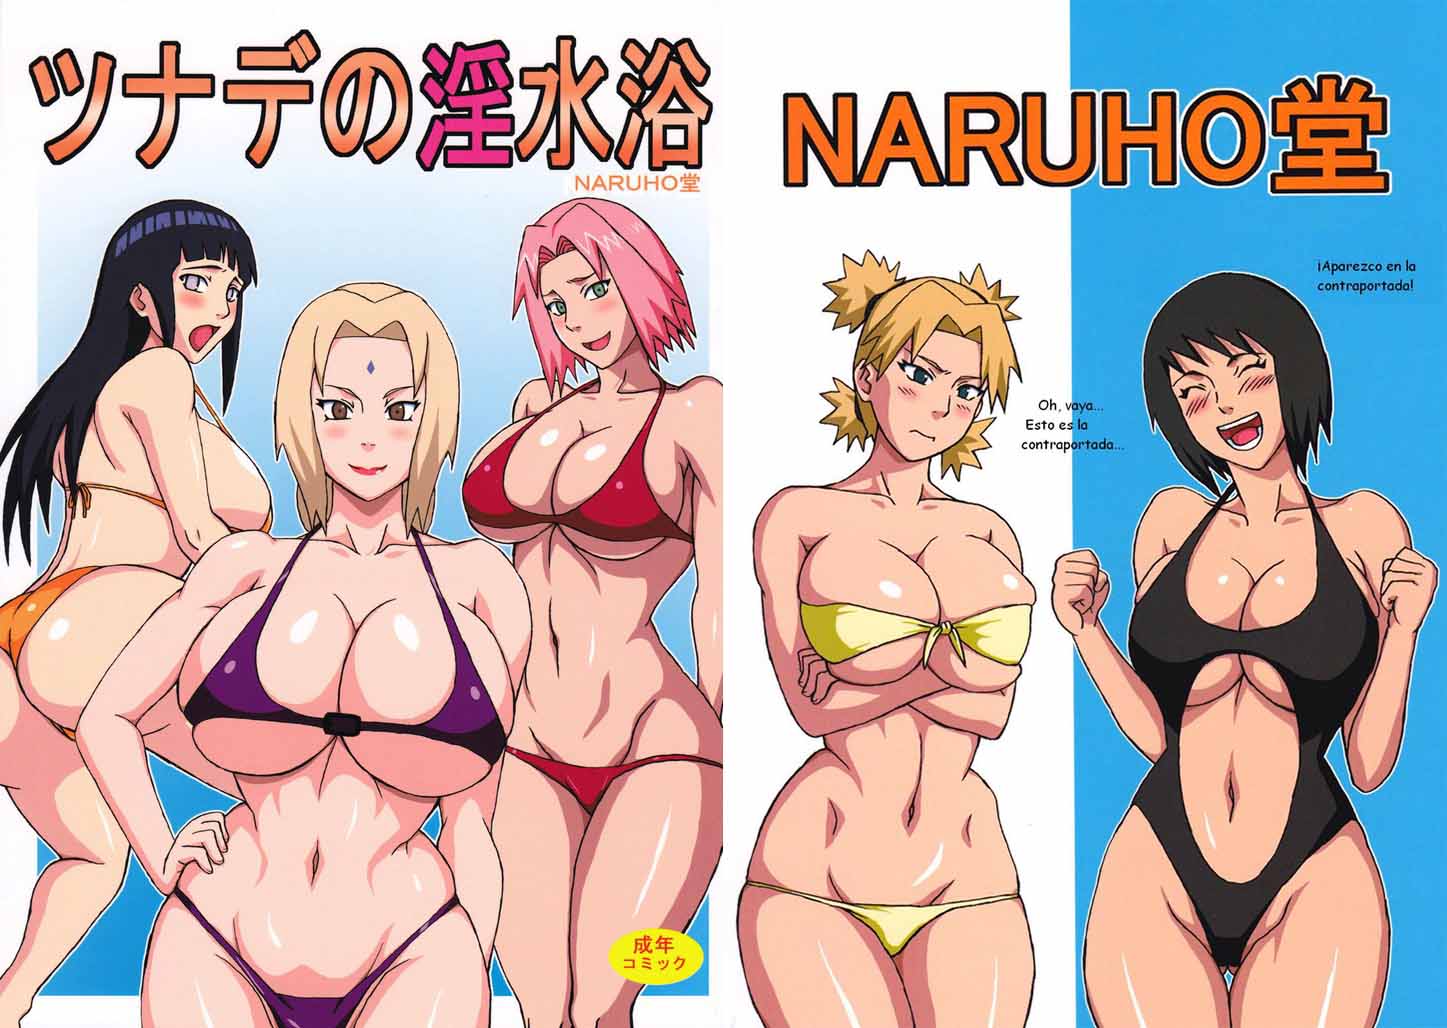 Naruto Archivos Porno Anime Comics Animes Porno